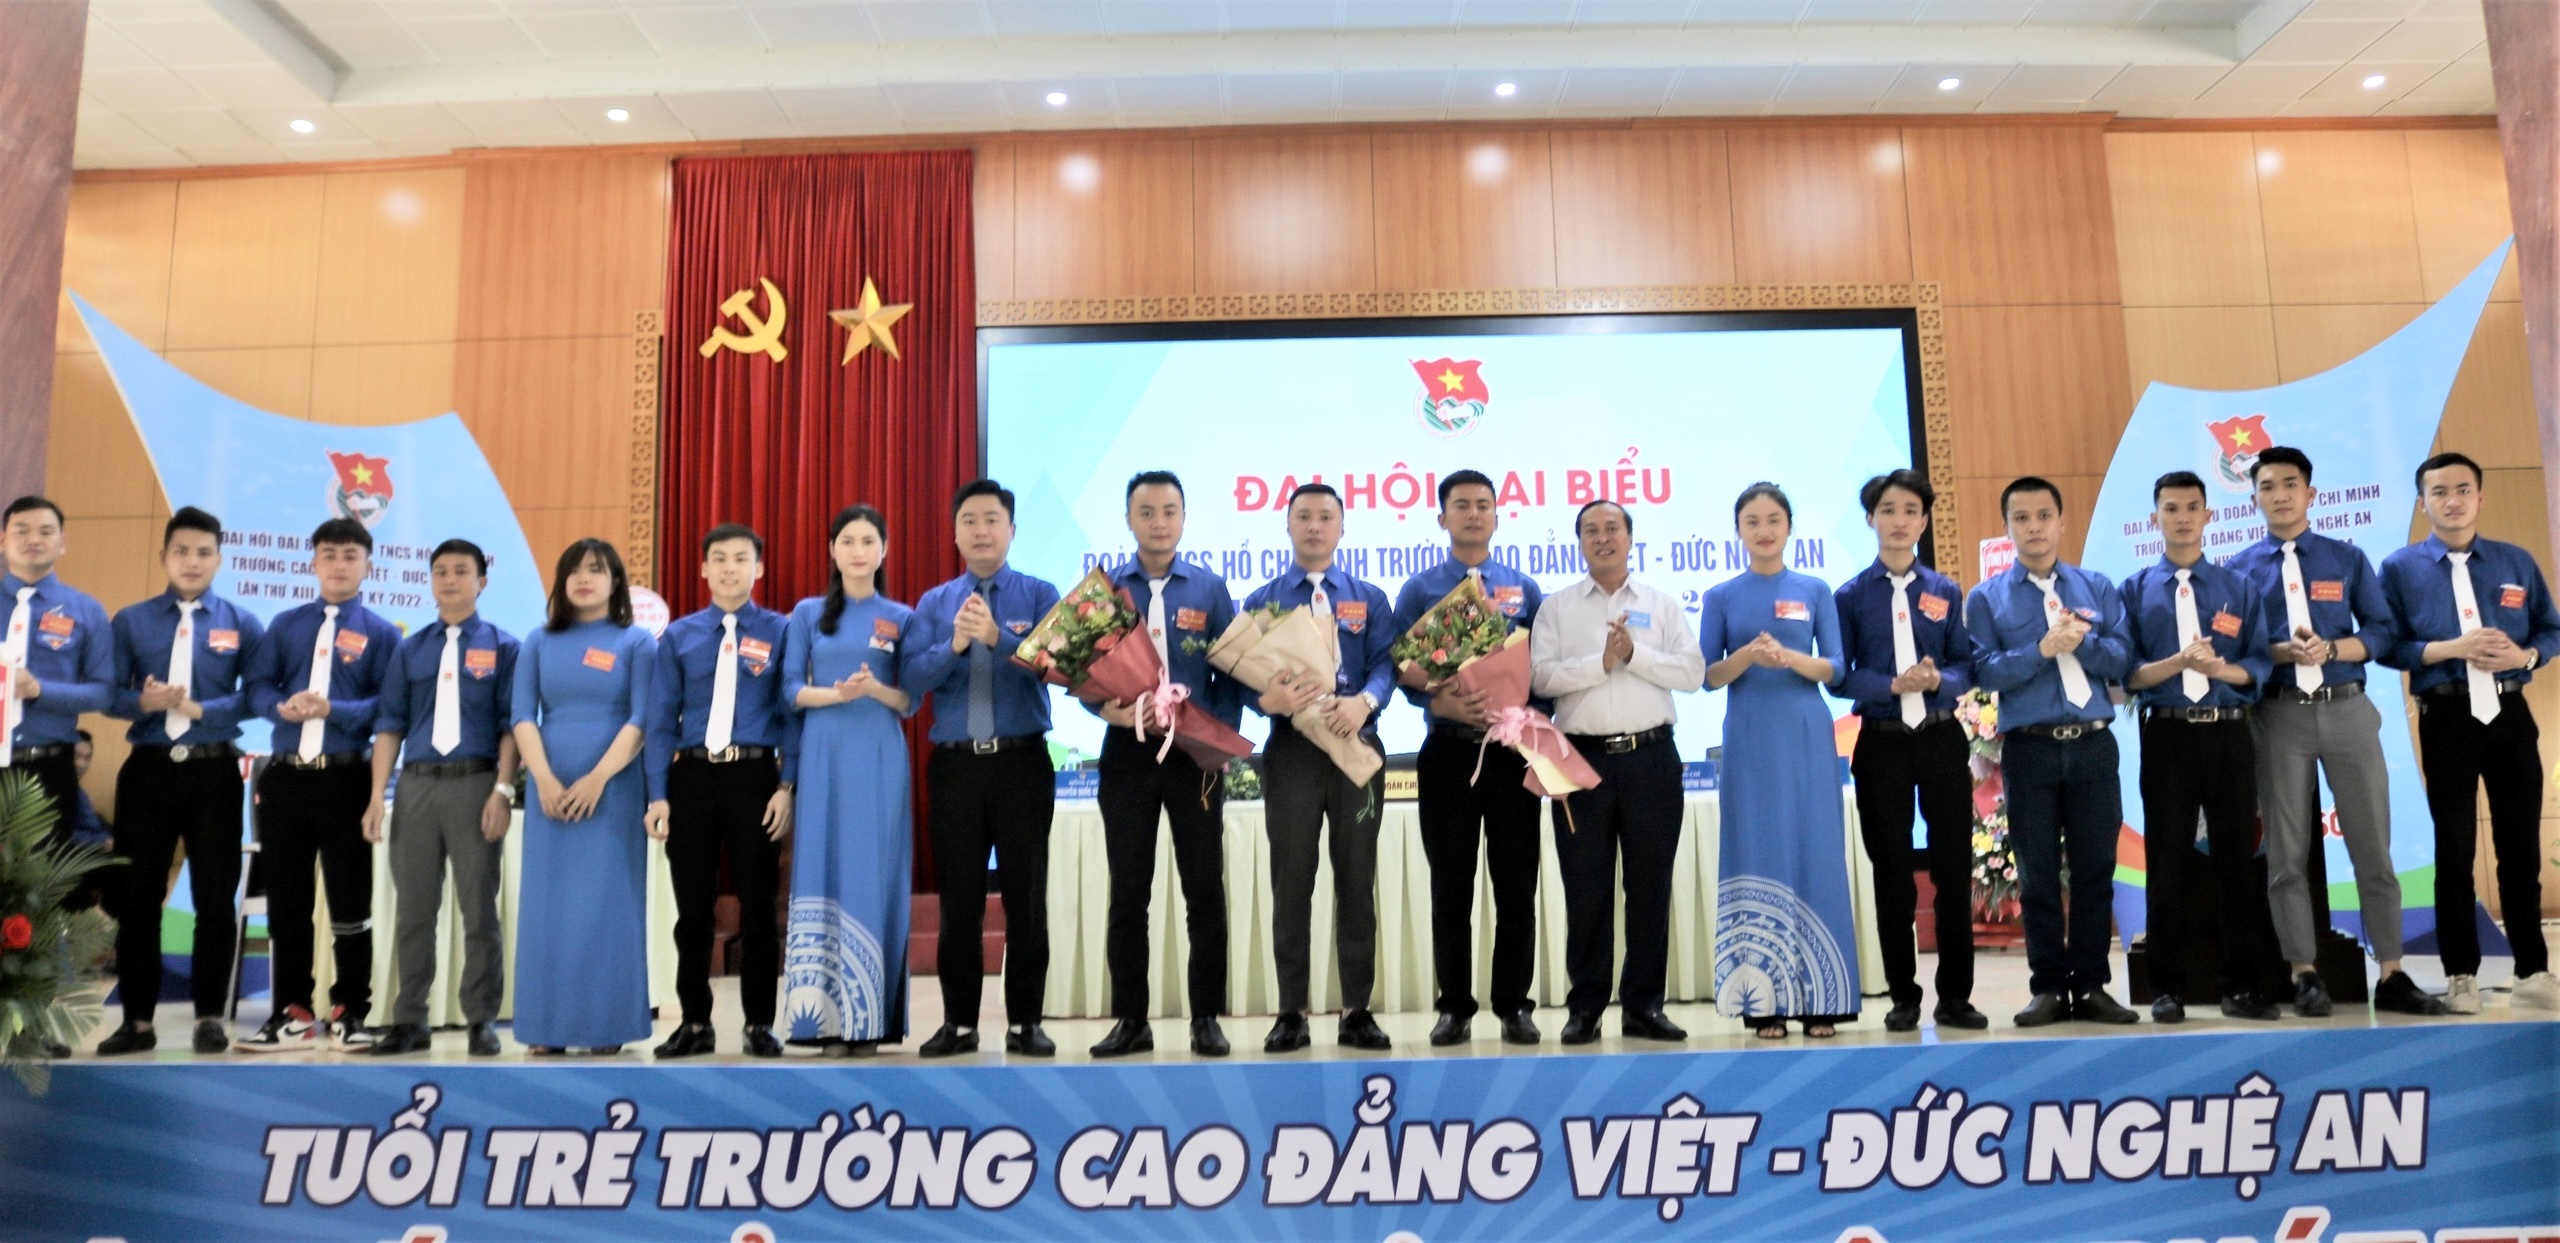 Đại hội Đại biểu Đoàn Thanh niên Cộng sản Hồ Chí Minh Trường Cao đẳng Việt – Đức Nghệ An, lần thứ XIII, nhiệm kỳ 2022 – 2024